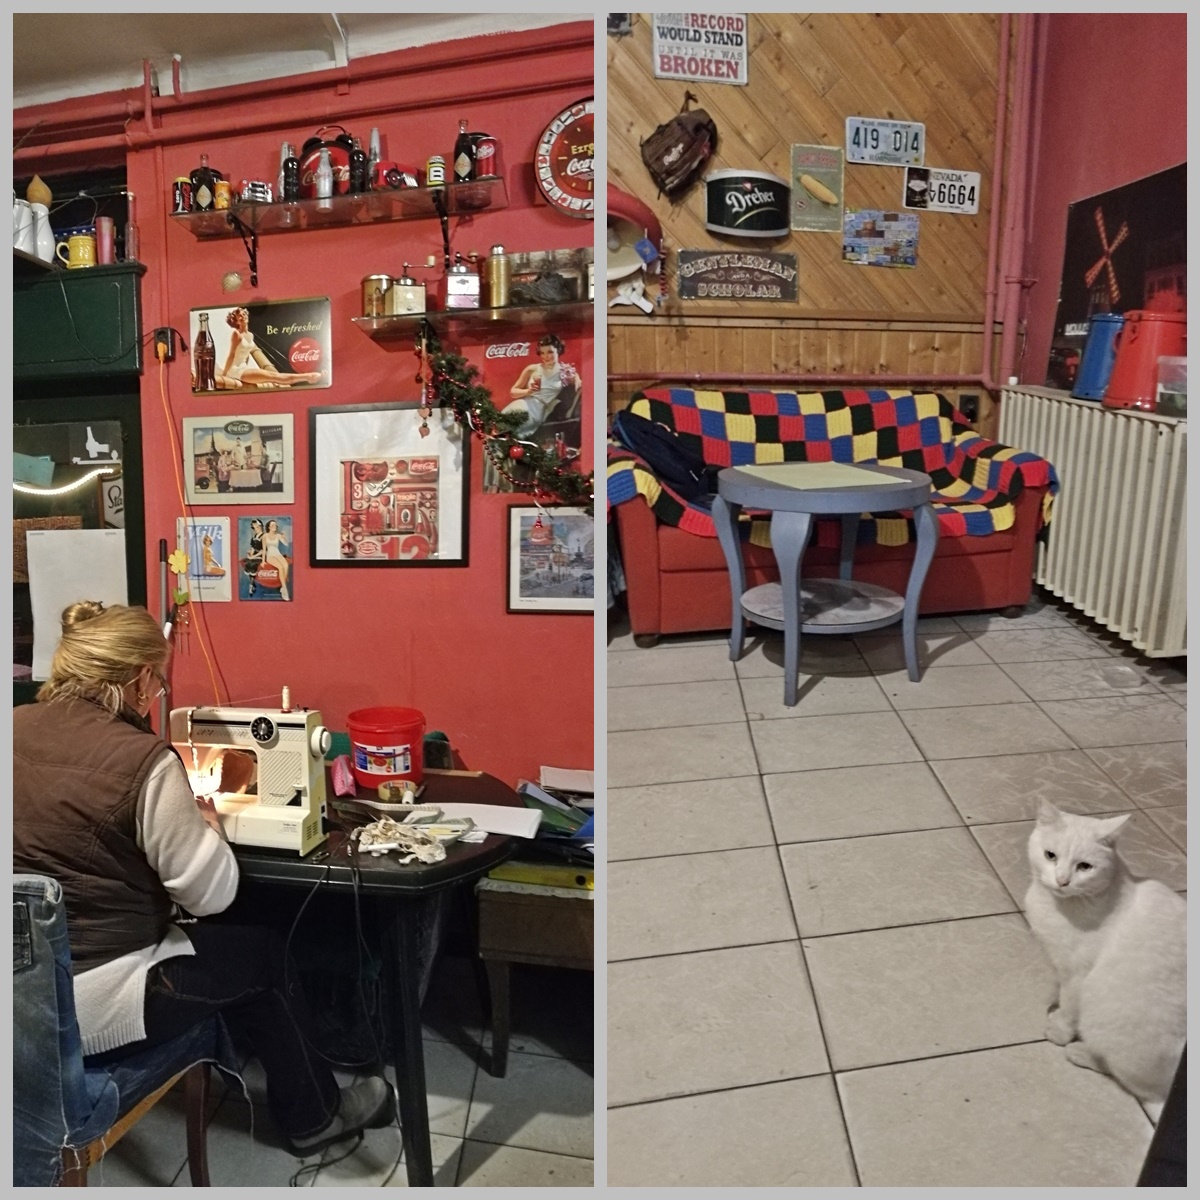 Kocsmaturista - budapesti kocsmatúra olasz szemmel - Árnyas Söröző, varrógép akcióban és a Ház macskája - Kocsmaturista